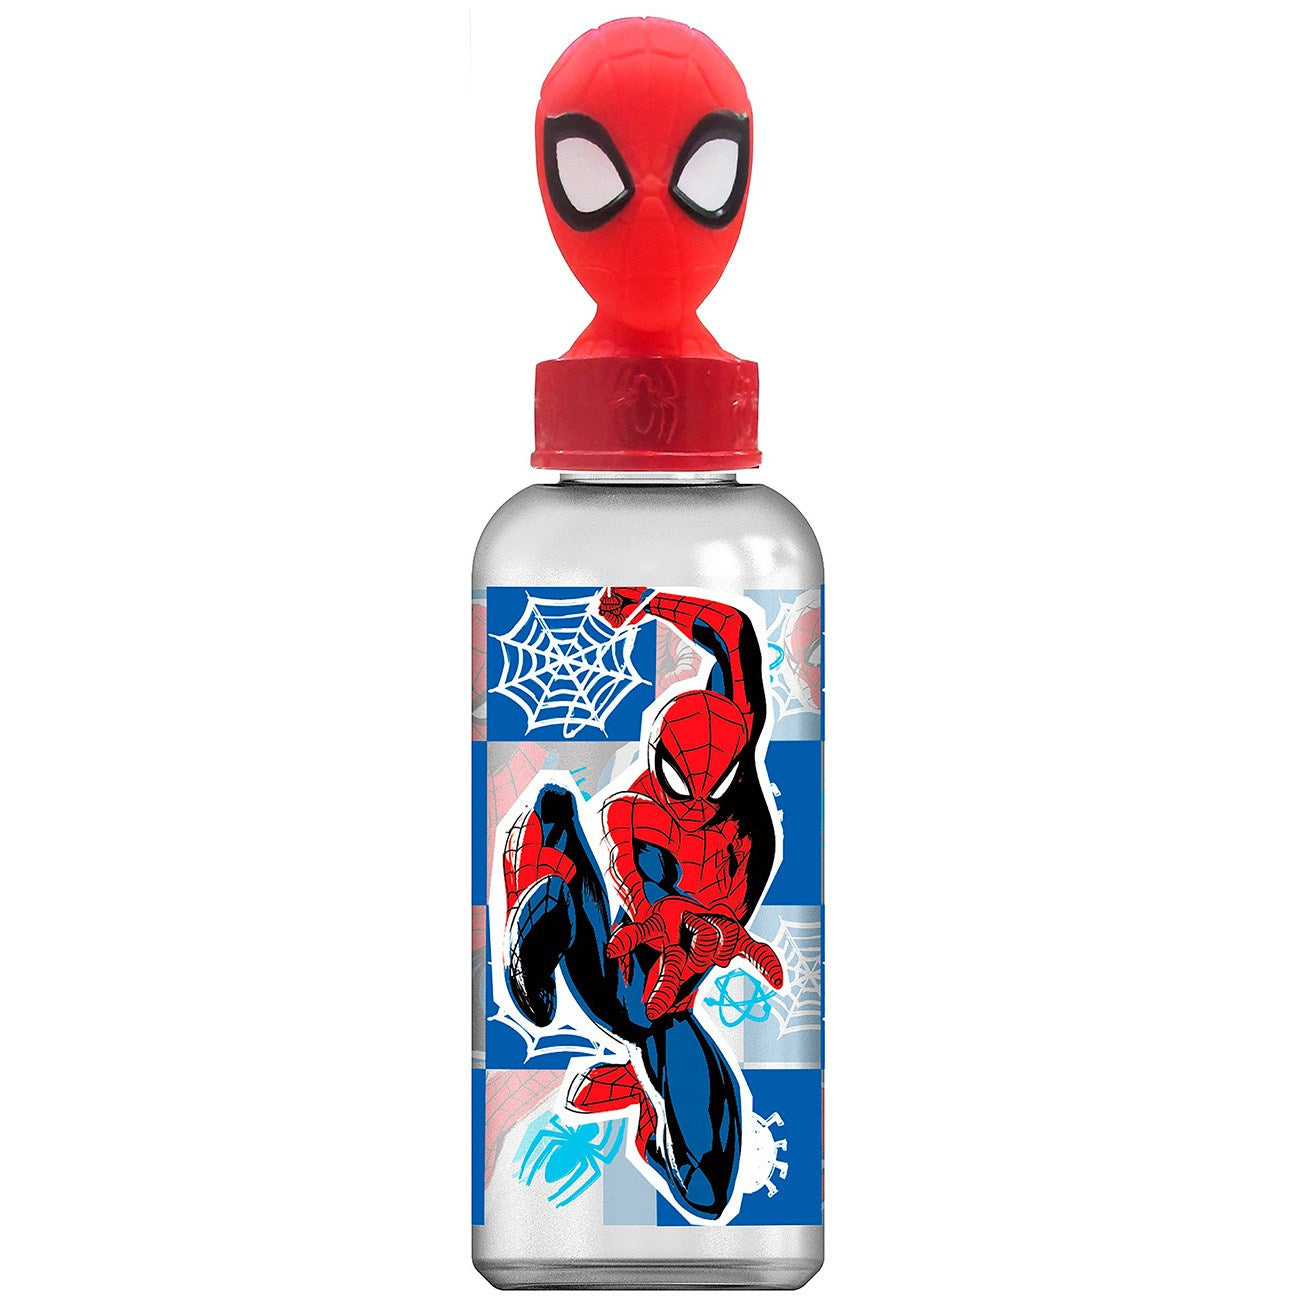 Euromic Spiderman vannflaske med 3D-figur